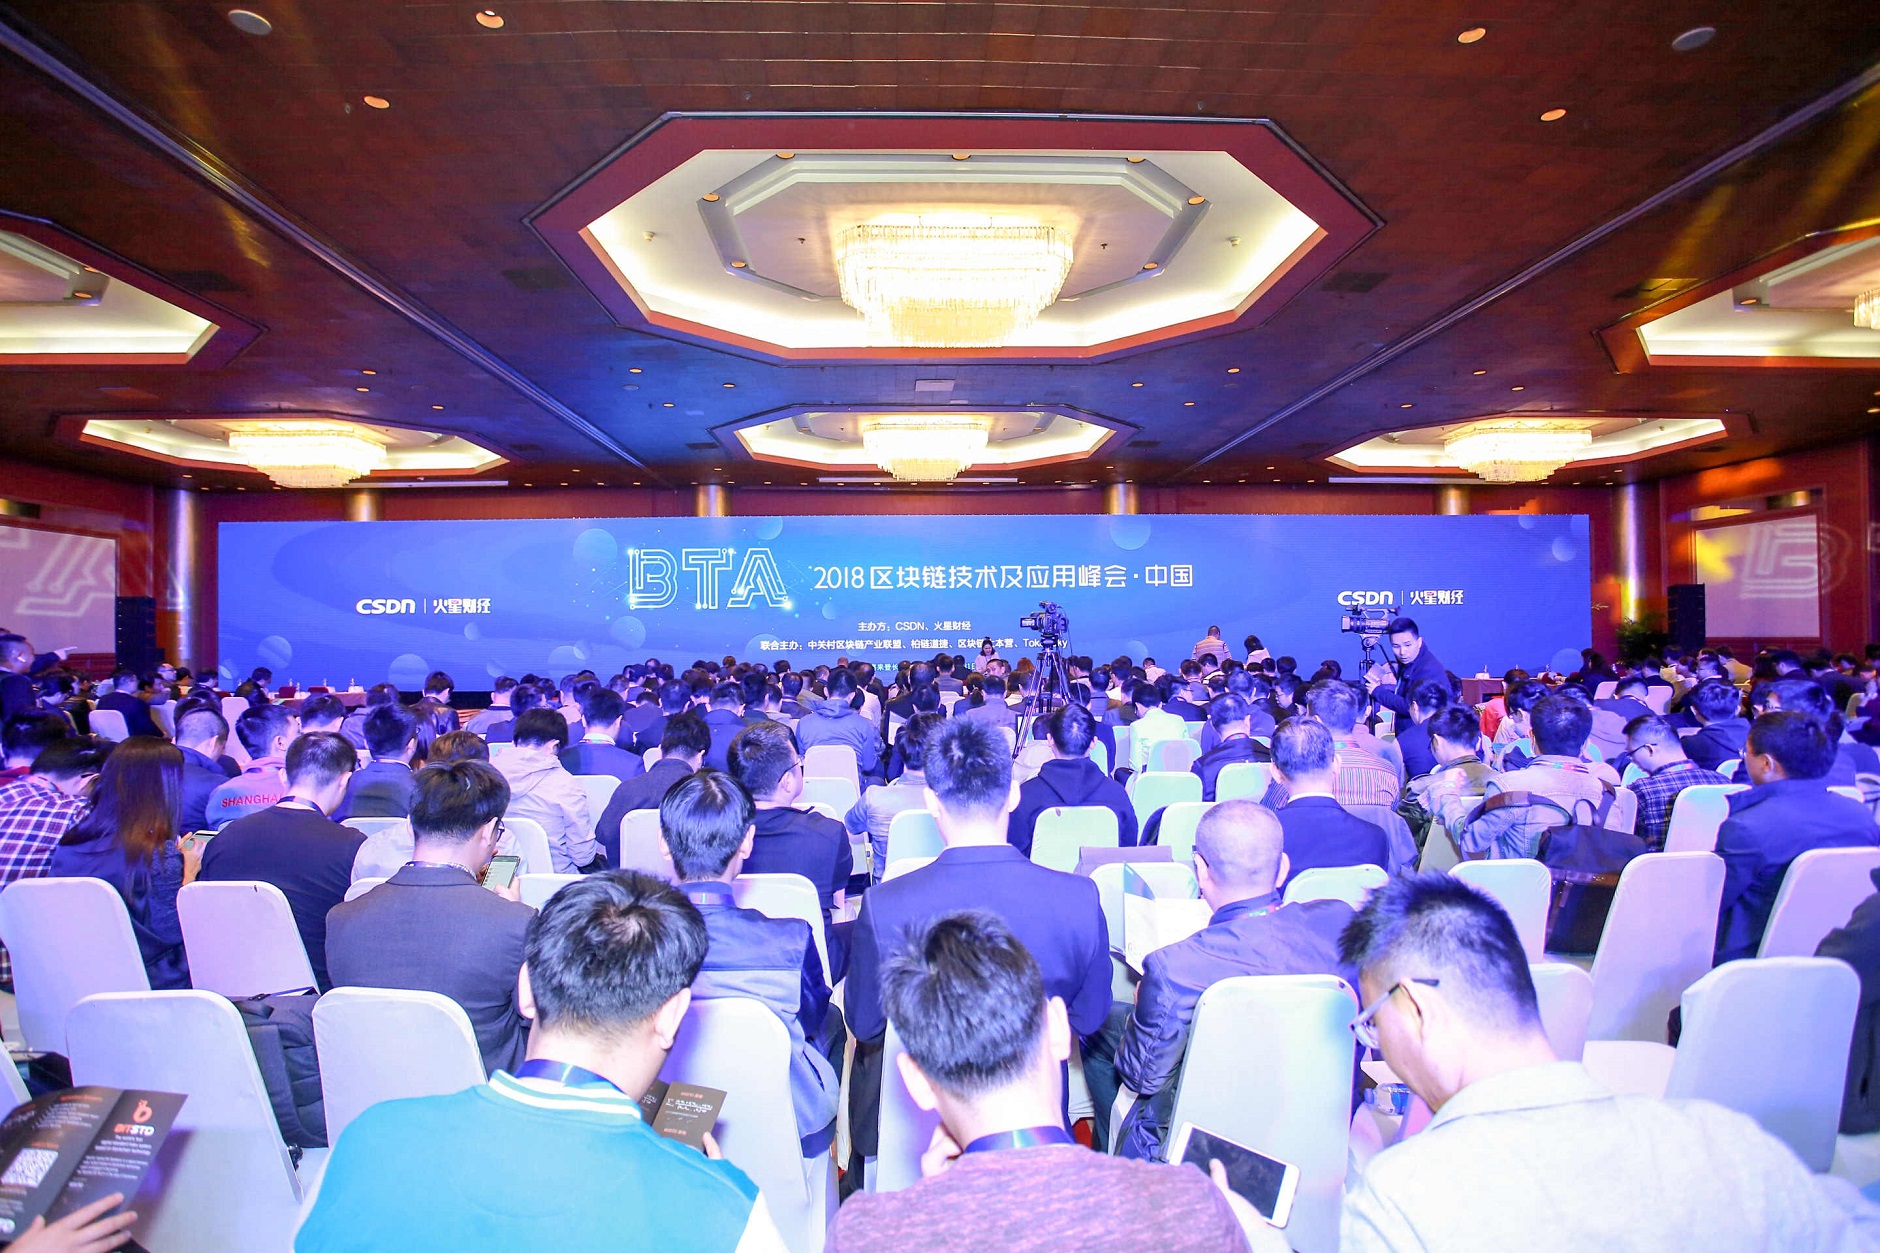 2018 区块链技术及应用峰会(BTA)·中国在北京盛大召开